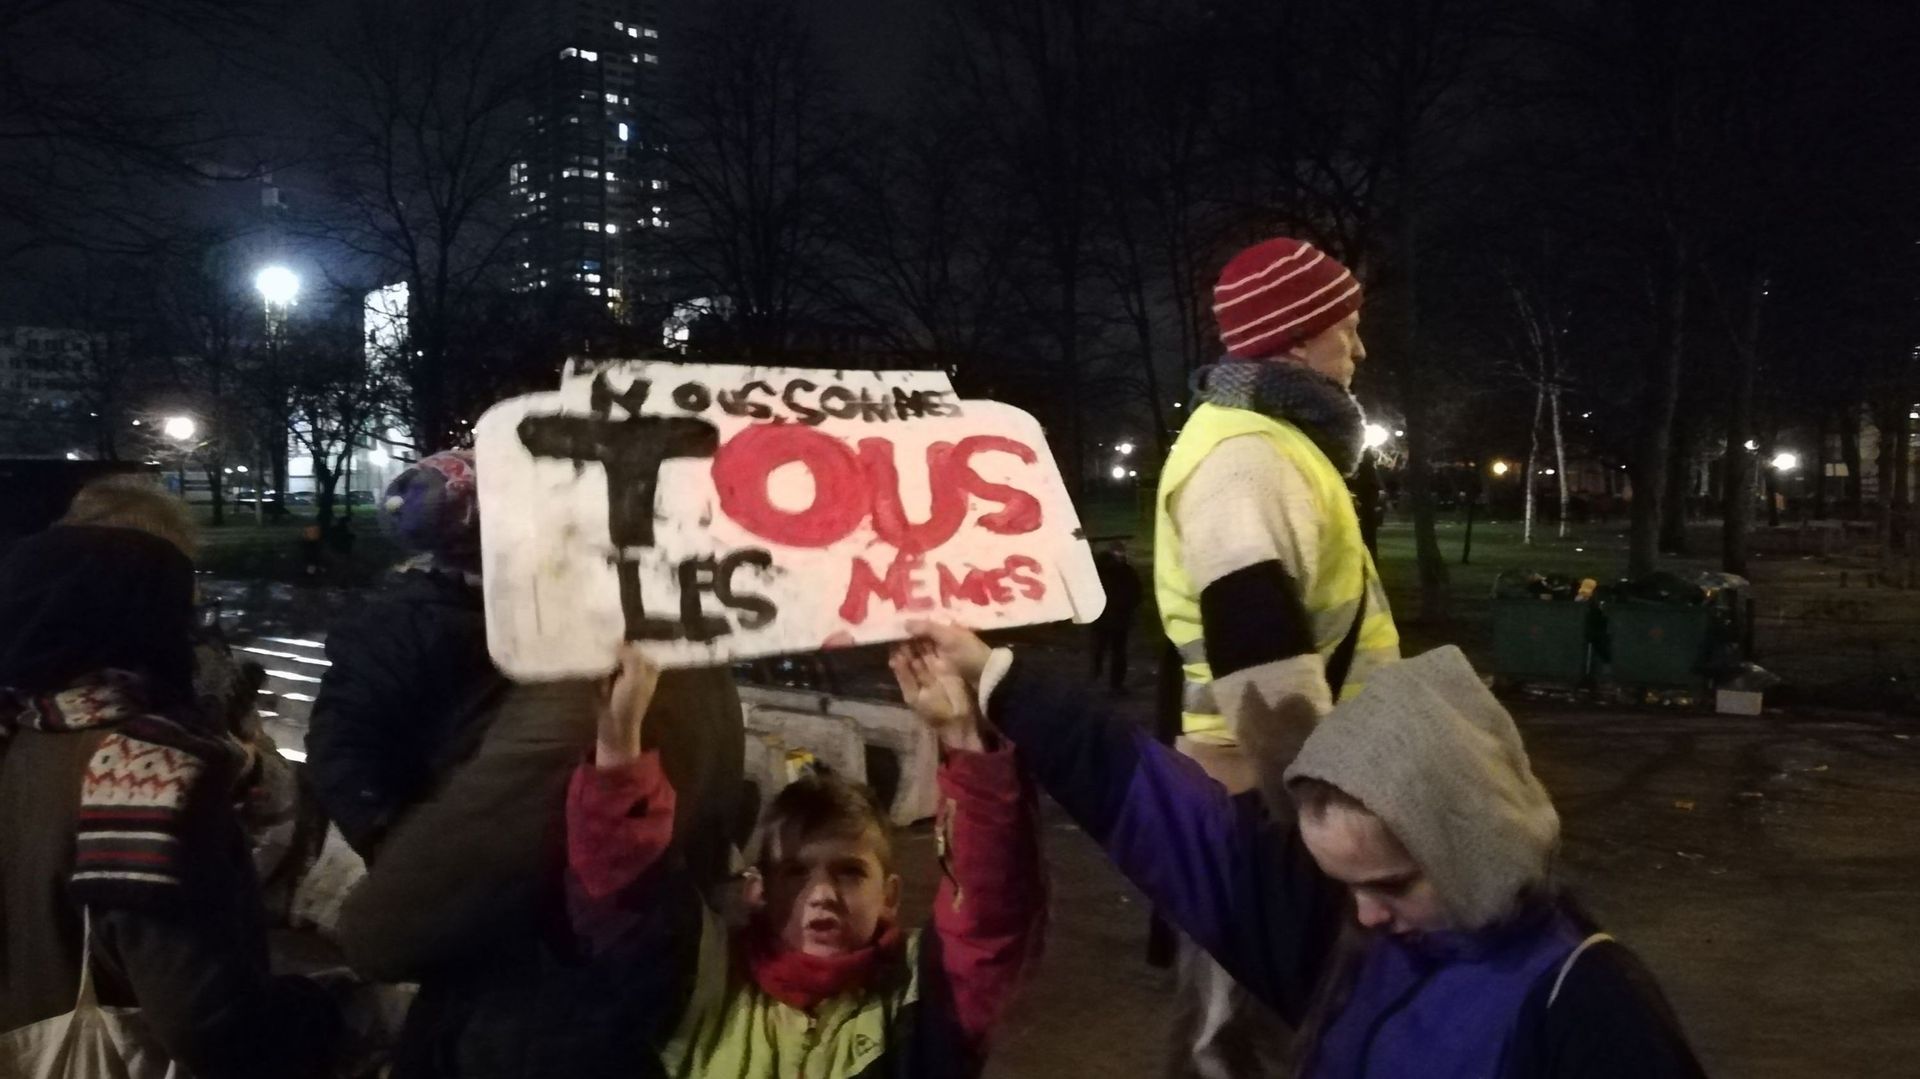 Manifestation de soutien aux migrants en transit du parc Maximilien qui étaient appelés ce soir-là "transmigrants" par les autorités (Janvier 2018)